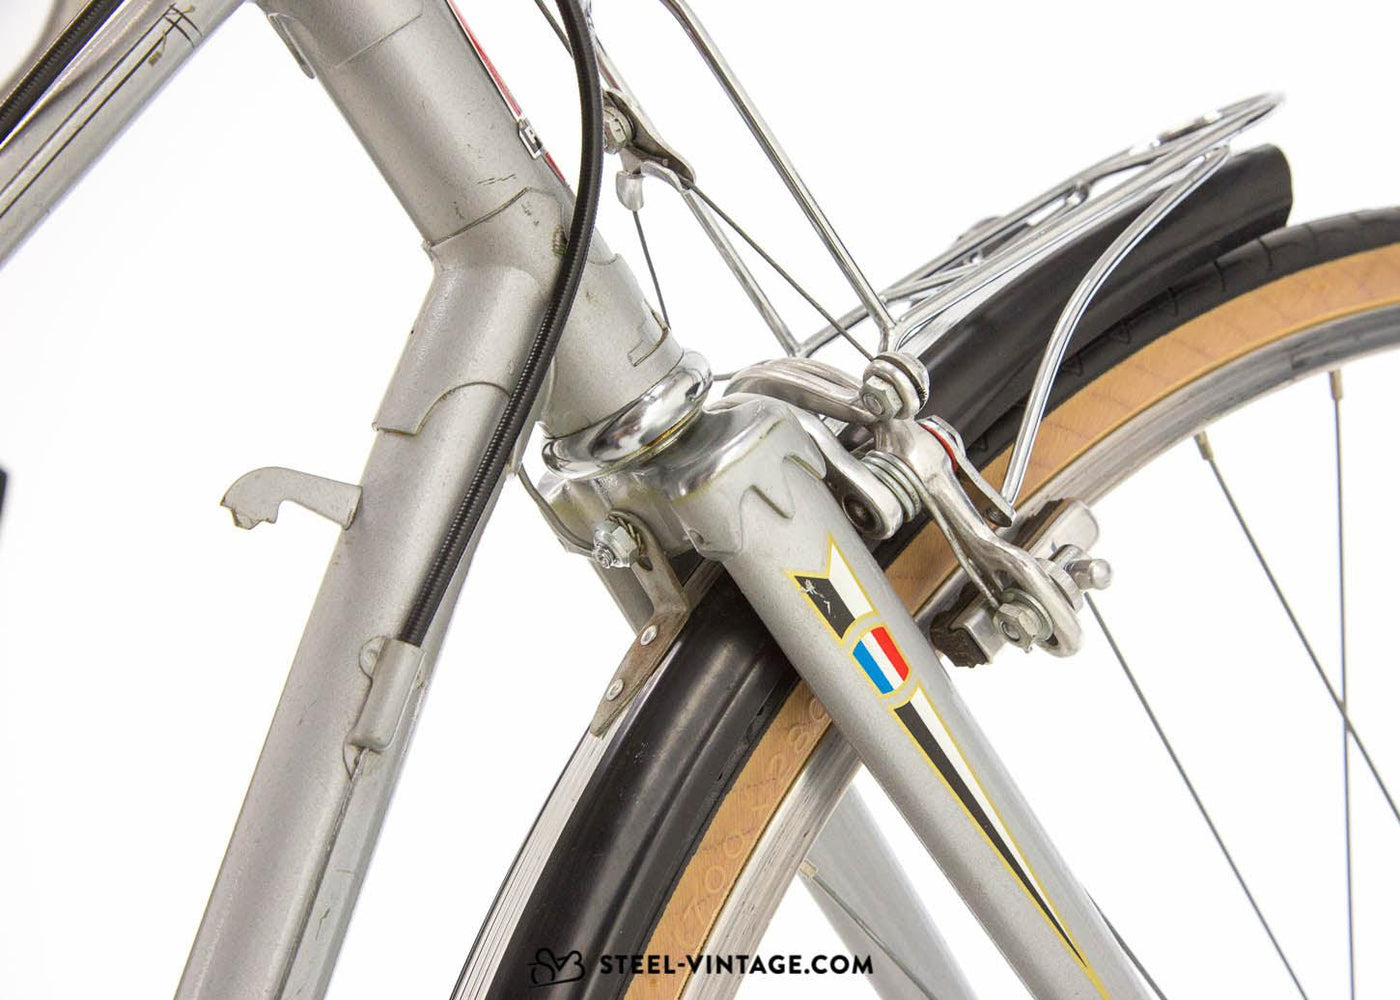 Peugeot PA65 Ladies Mixte 1970s Road Bicycle - Steel Vintage Bikes